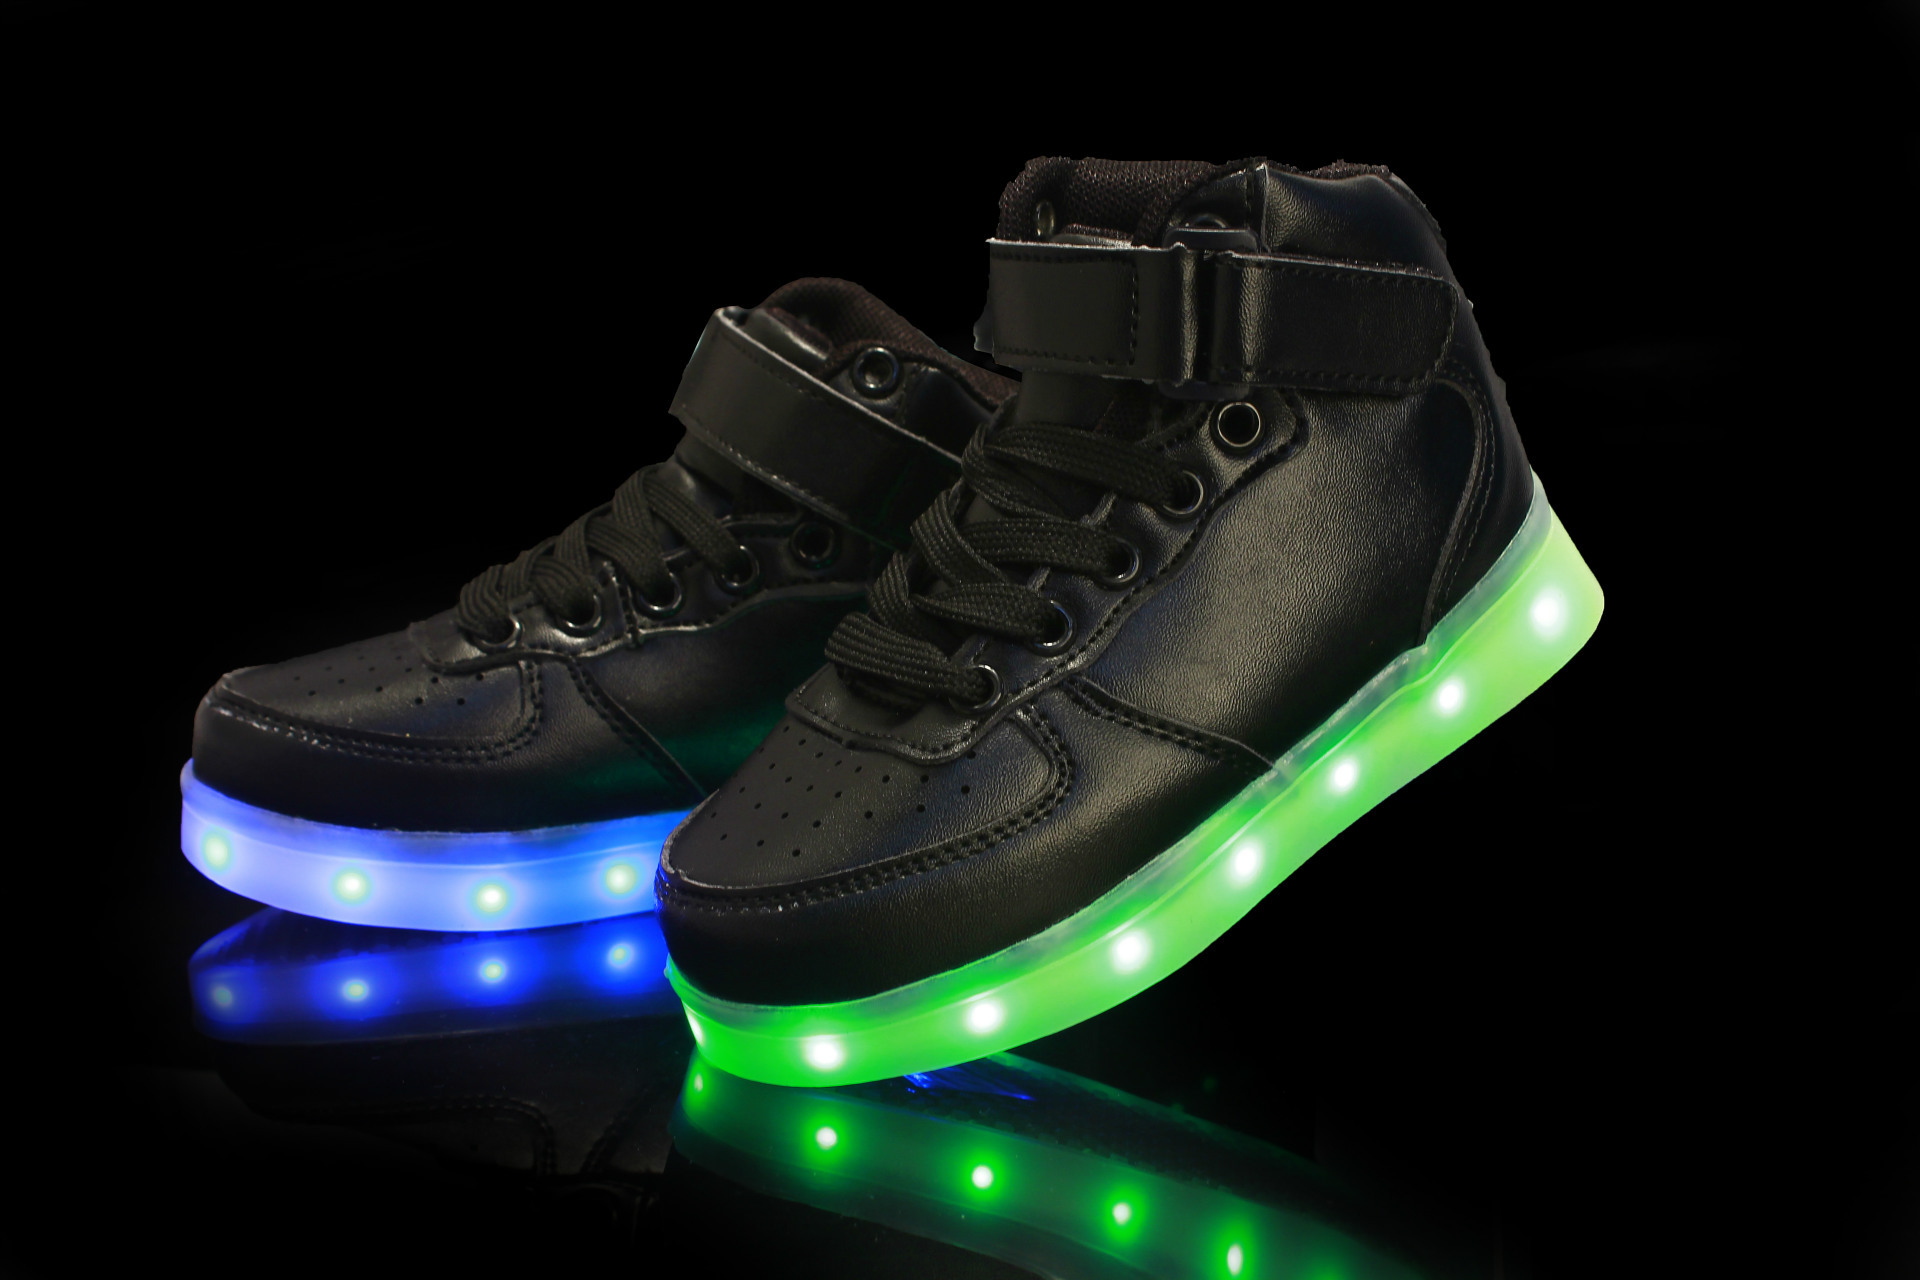 led light up shoes